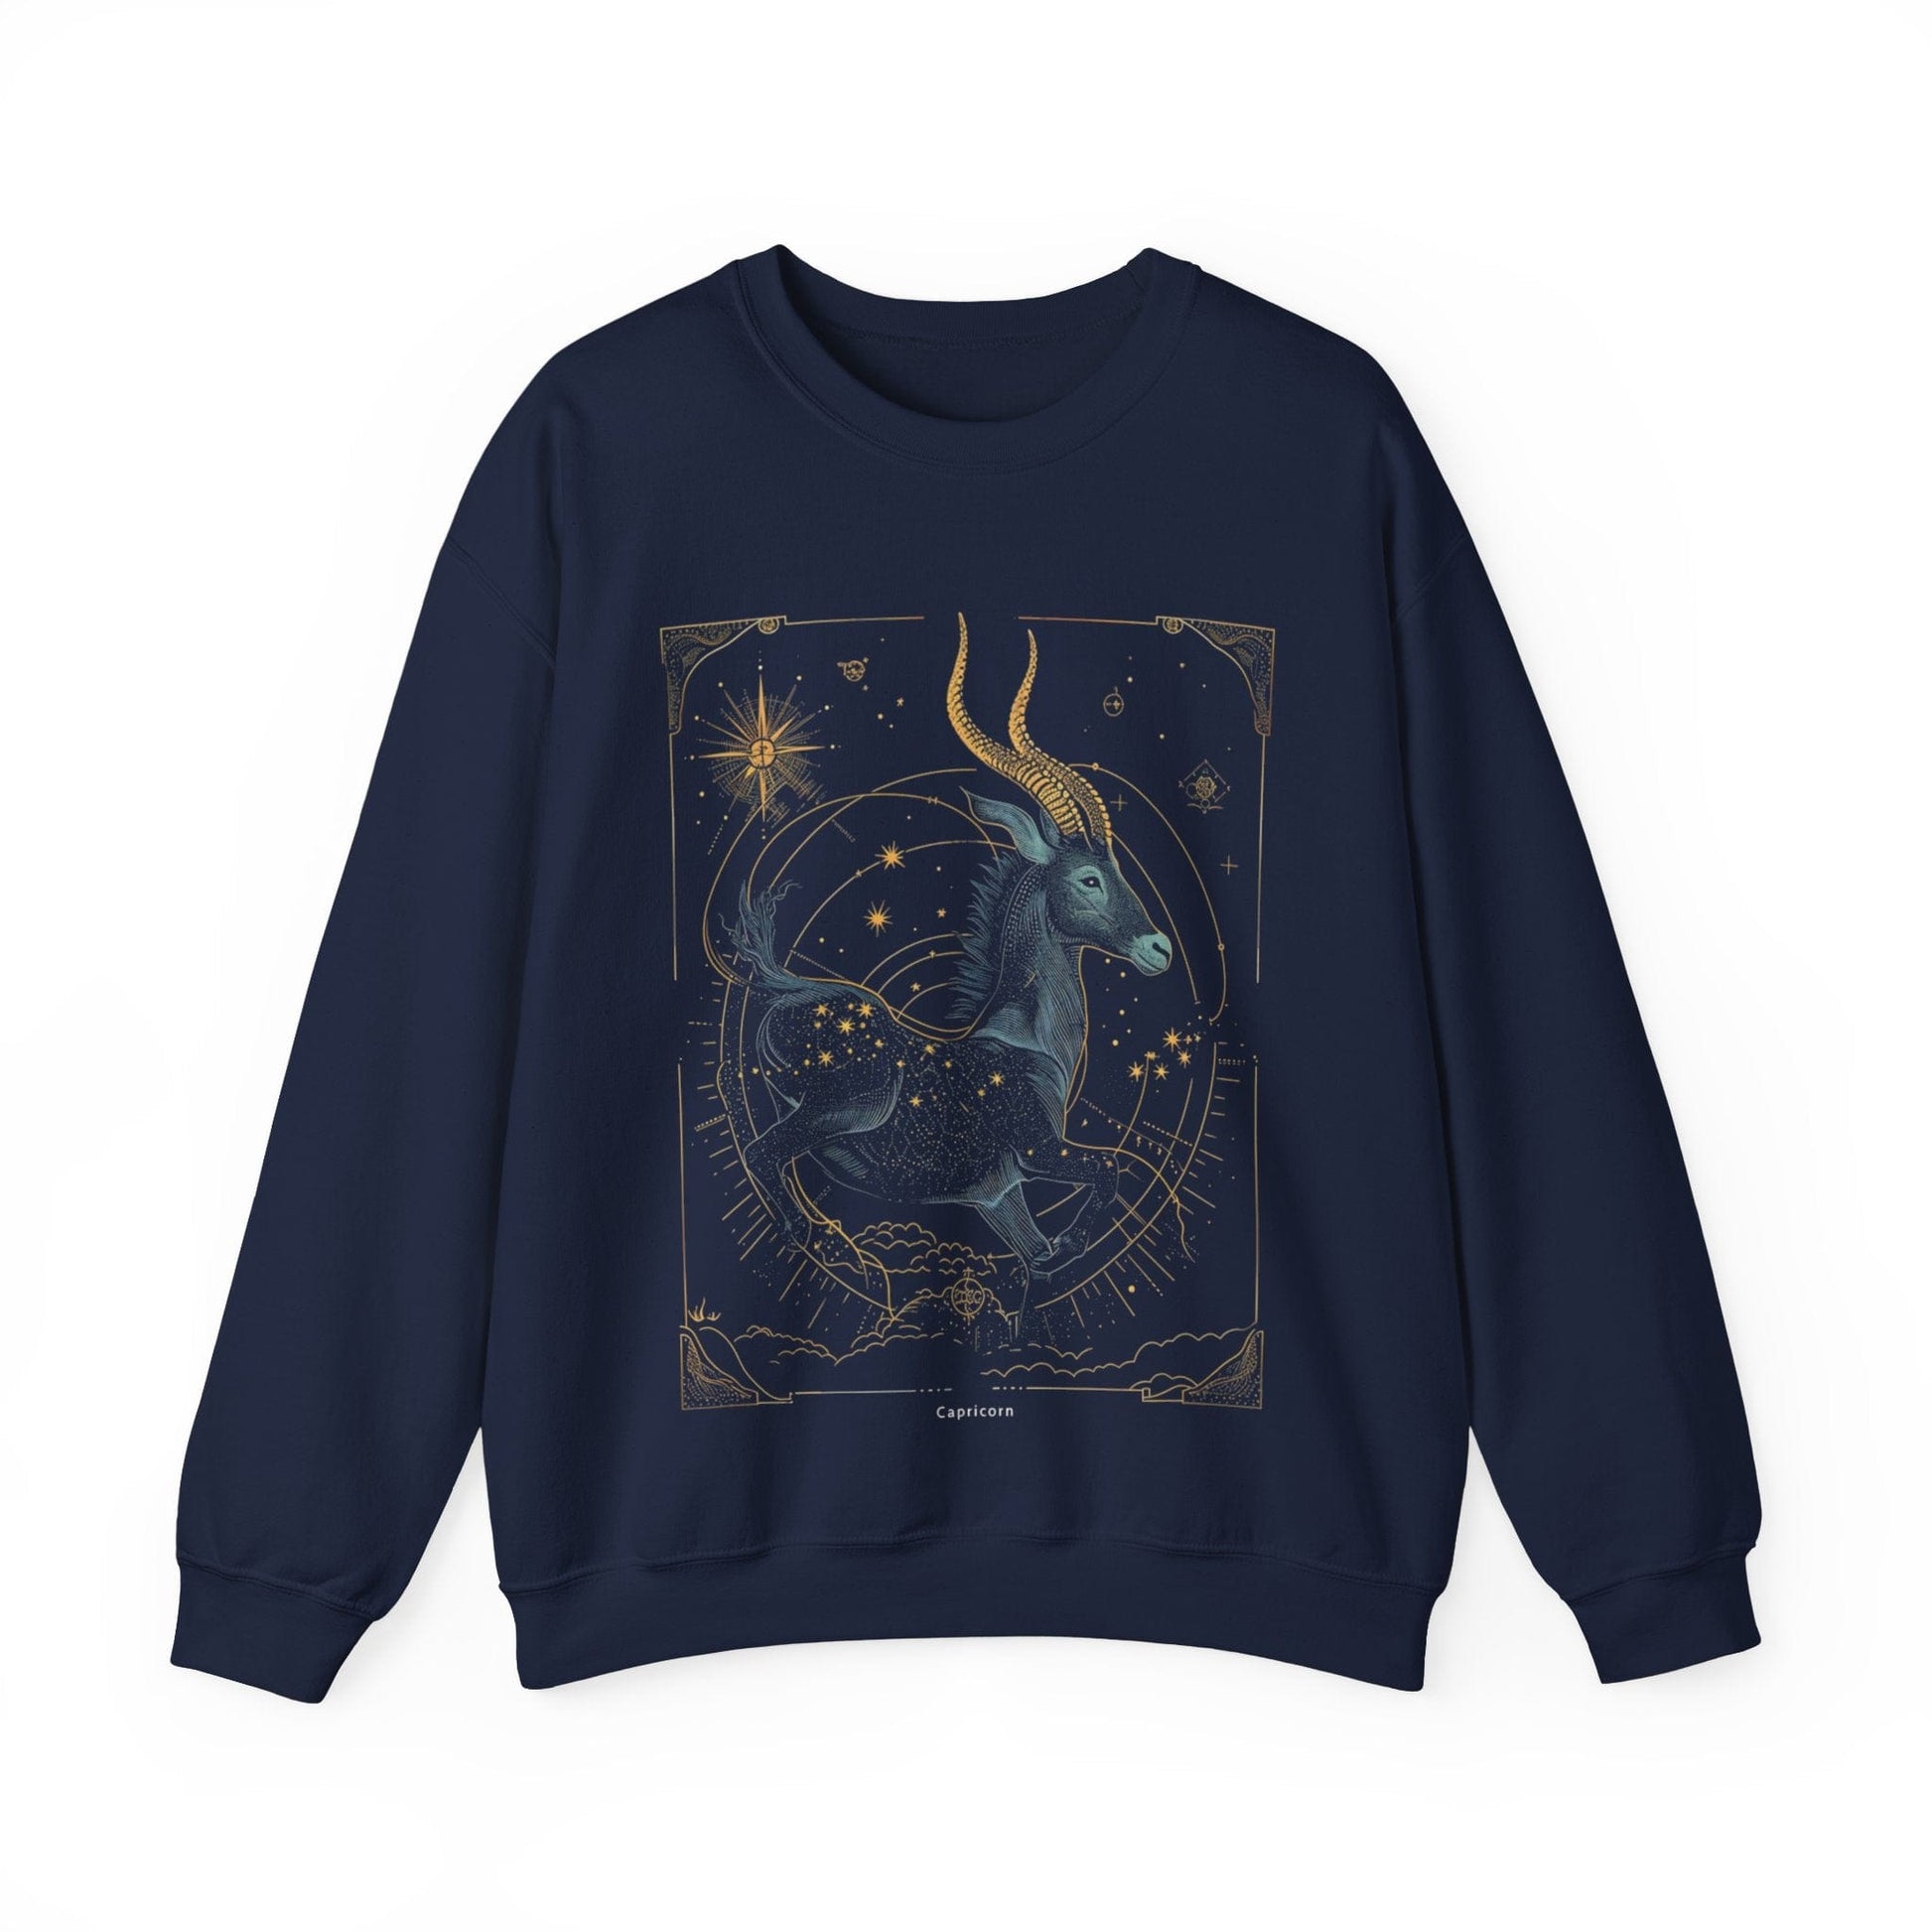 Sweatshirt S / Navy Capricorn Celestial Journey Sweatshirt: Stargaze in Comfort and Style